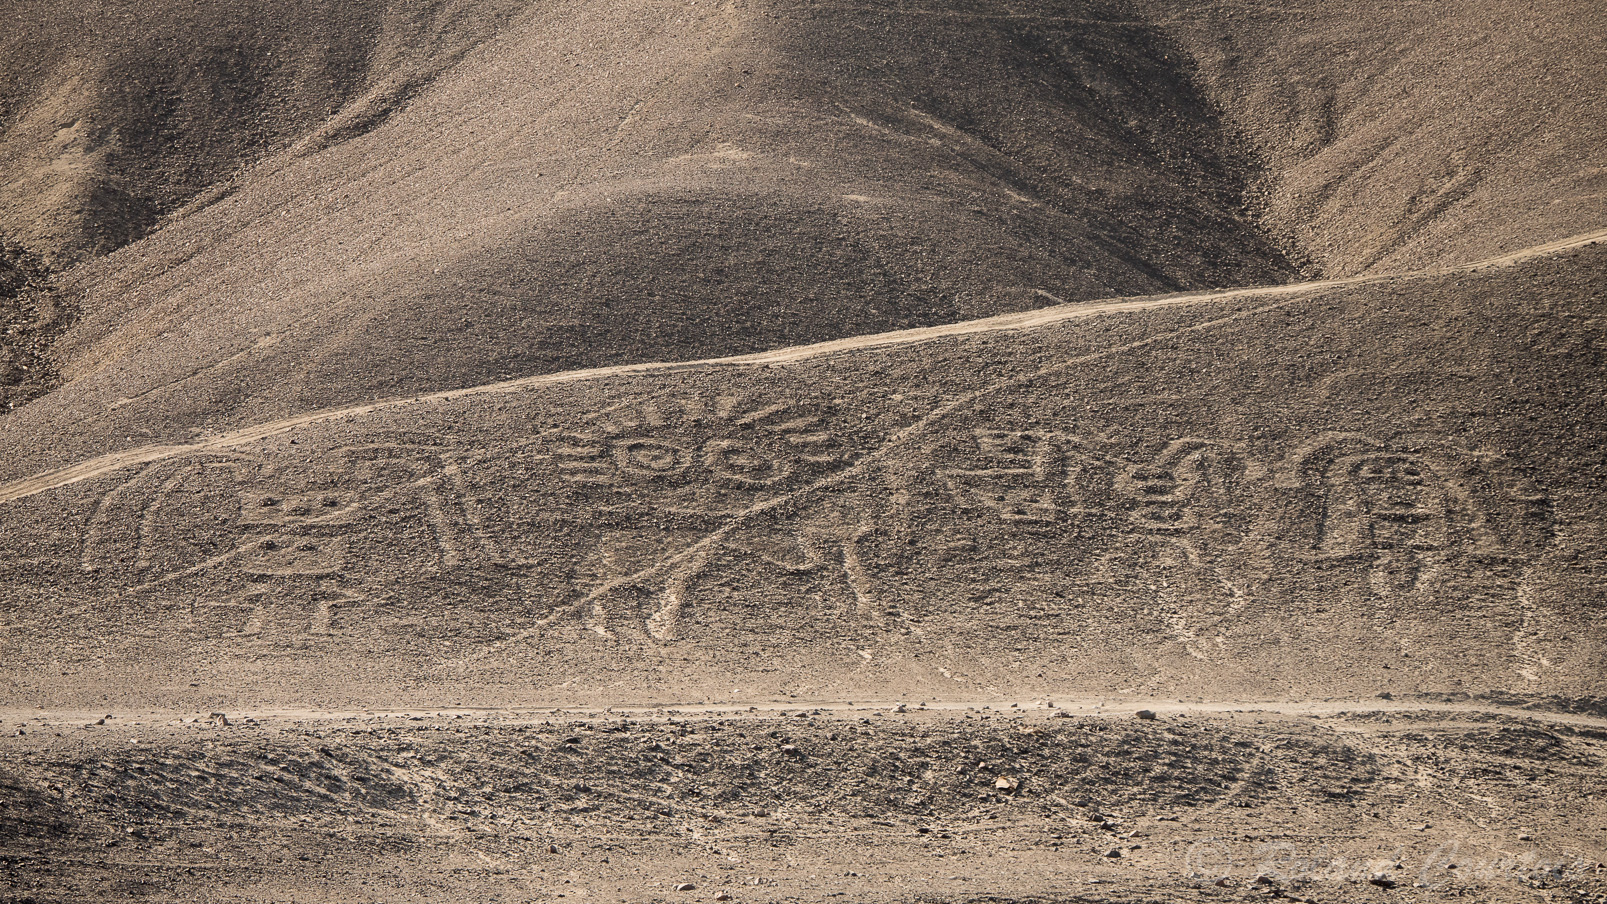 Géoglyphes de Chichictara dateraient de plus de 2000 ans